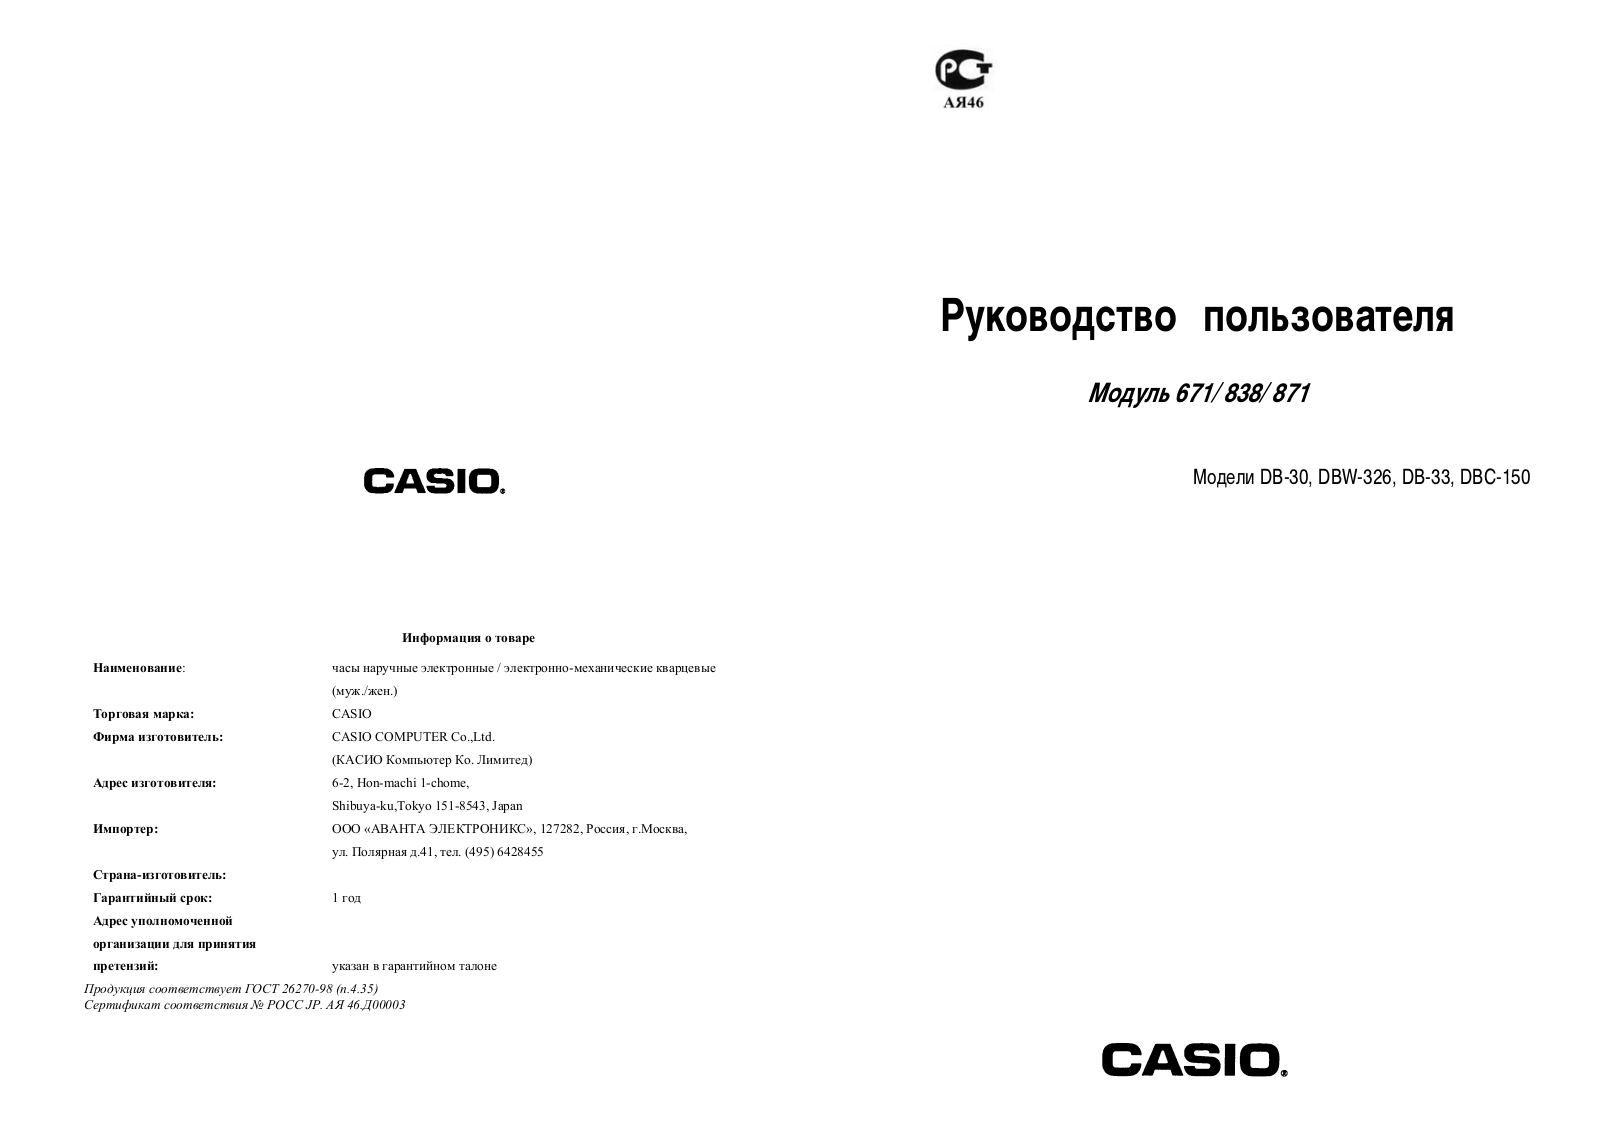 Casio 838 User Manual